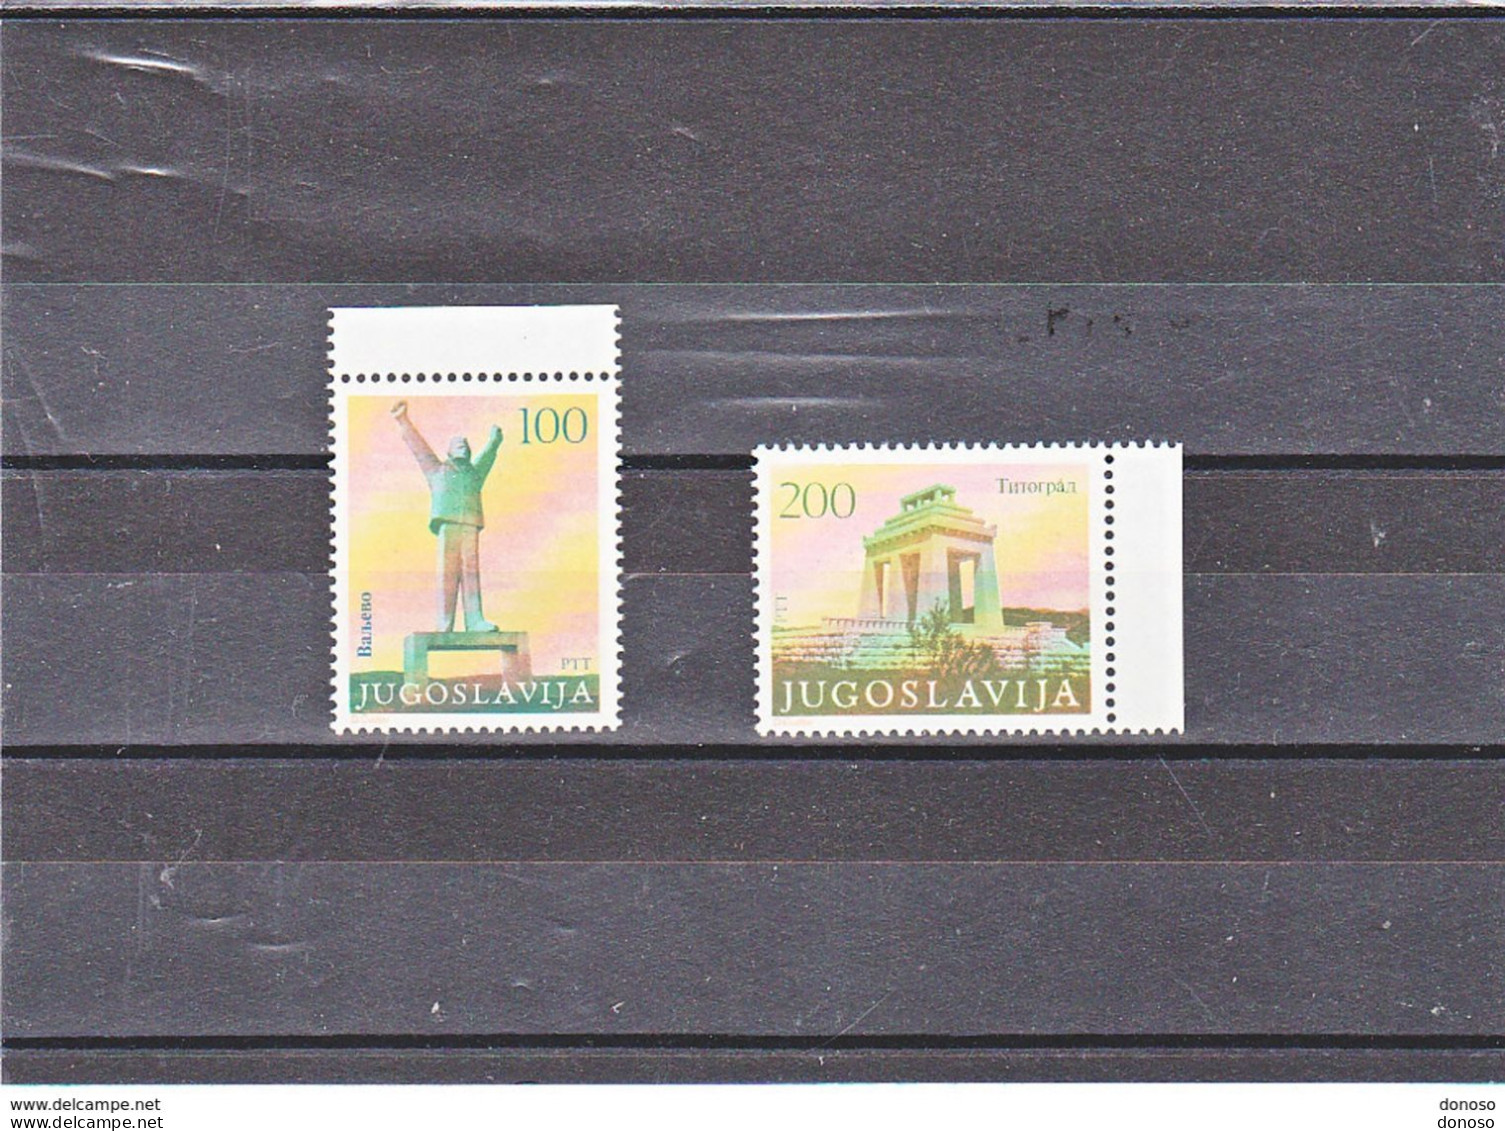 YOUGOSLAVIE 1983 MONUMENTS Yvert 1874-1875 NEUF** MNH Cote 8 Euros - Unused Stamps